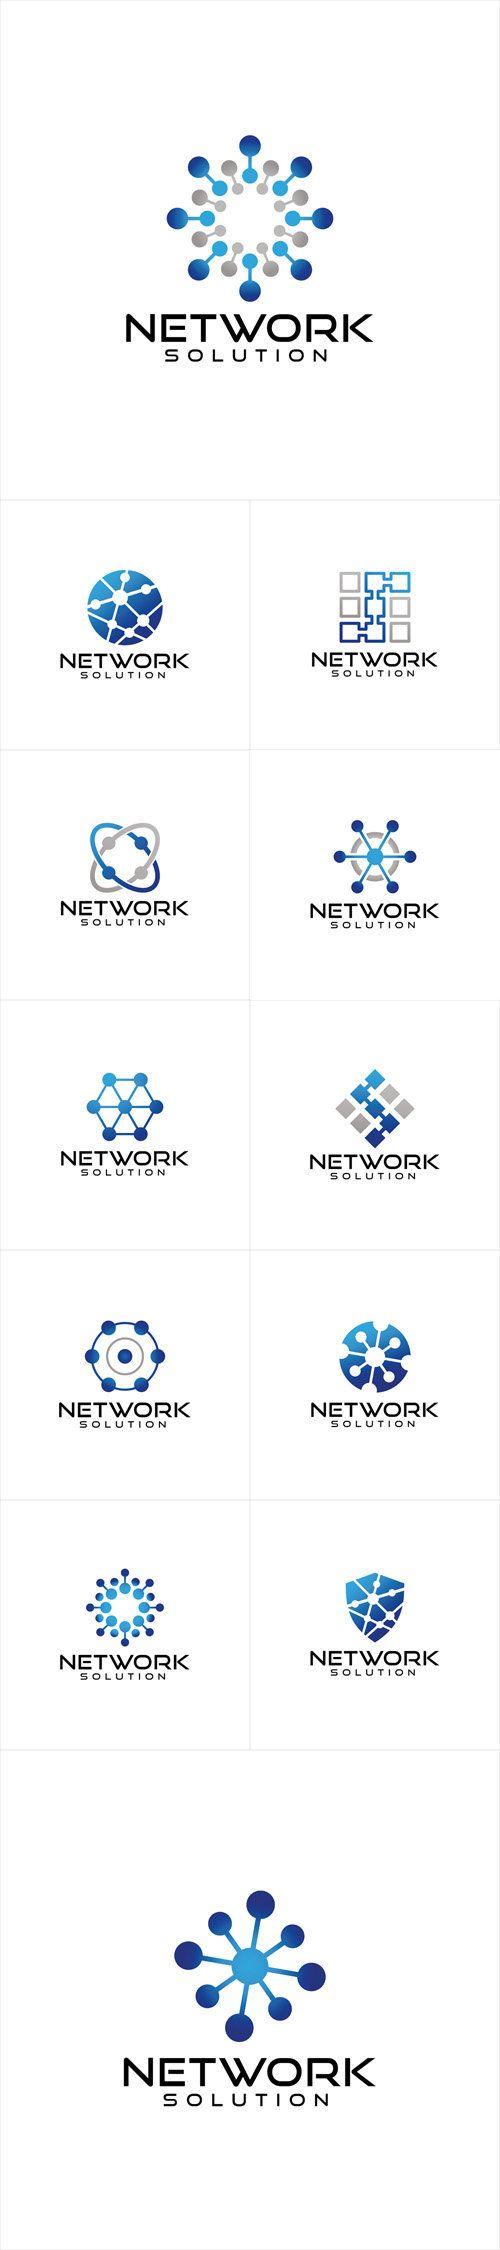 Network Logo - Vectors - Network Logo Design | logo | Pinterest | Logo design ...